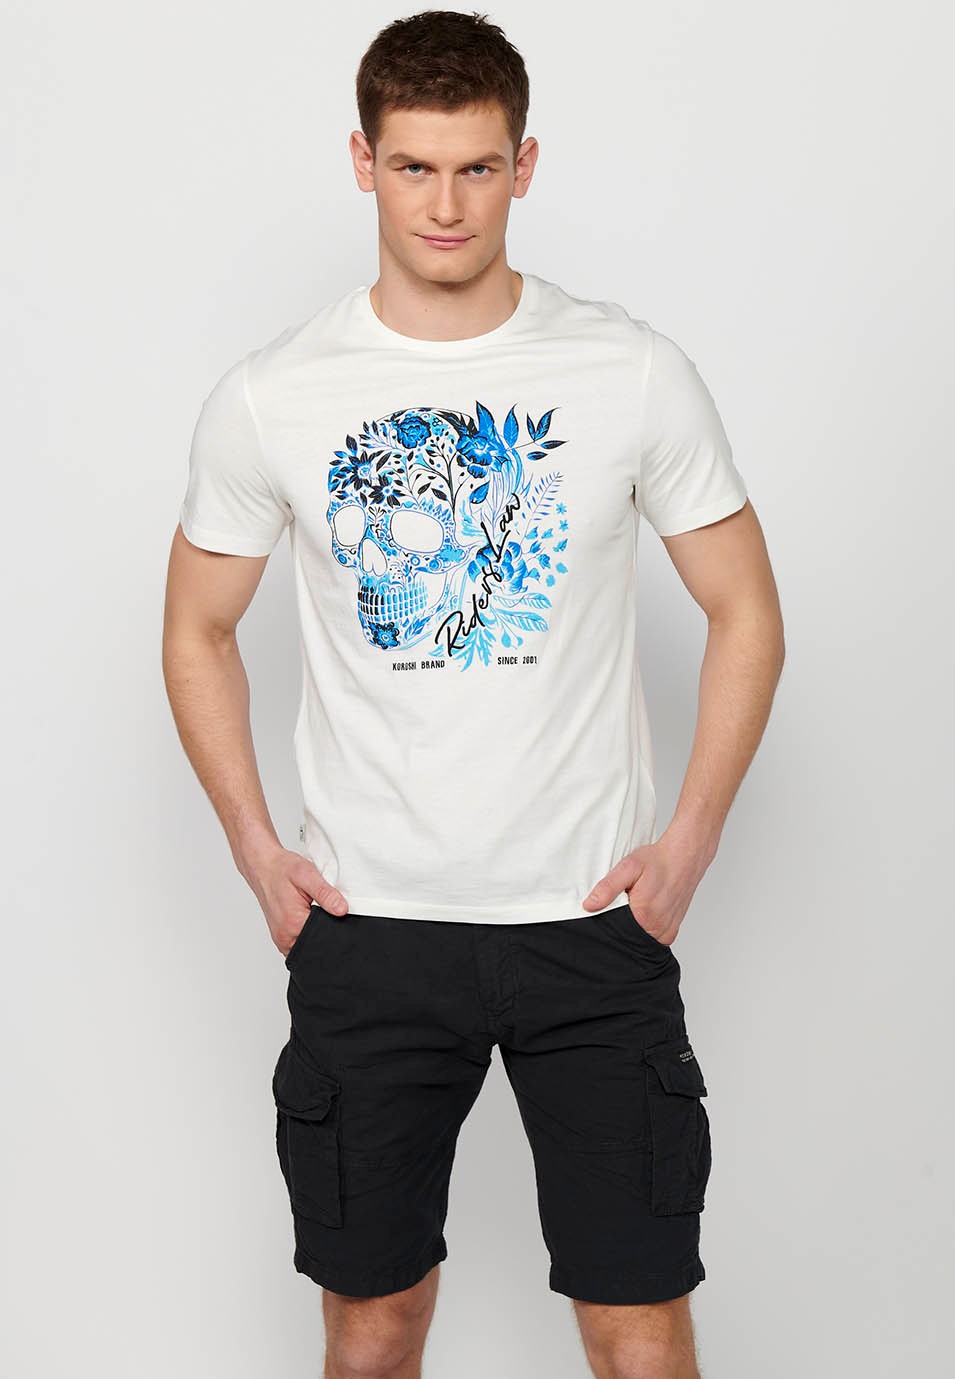 T-shirt en coton à manches courtes, imprimé devant, couleur blanc pour homme